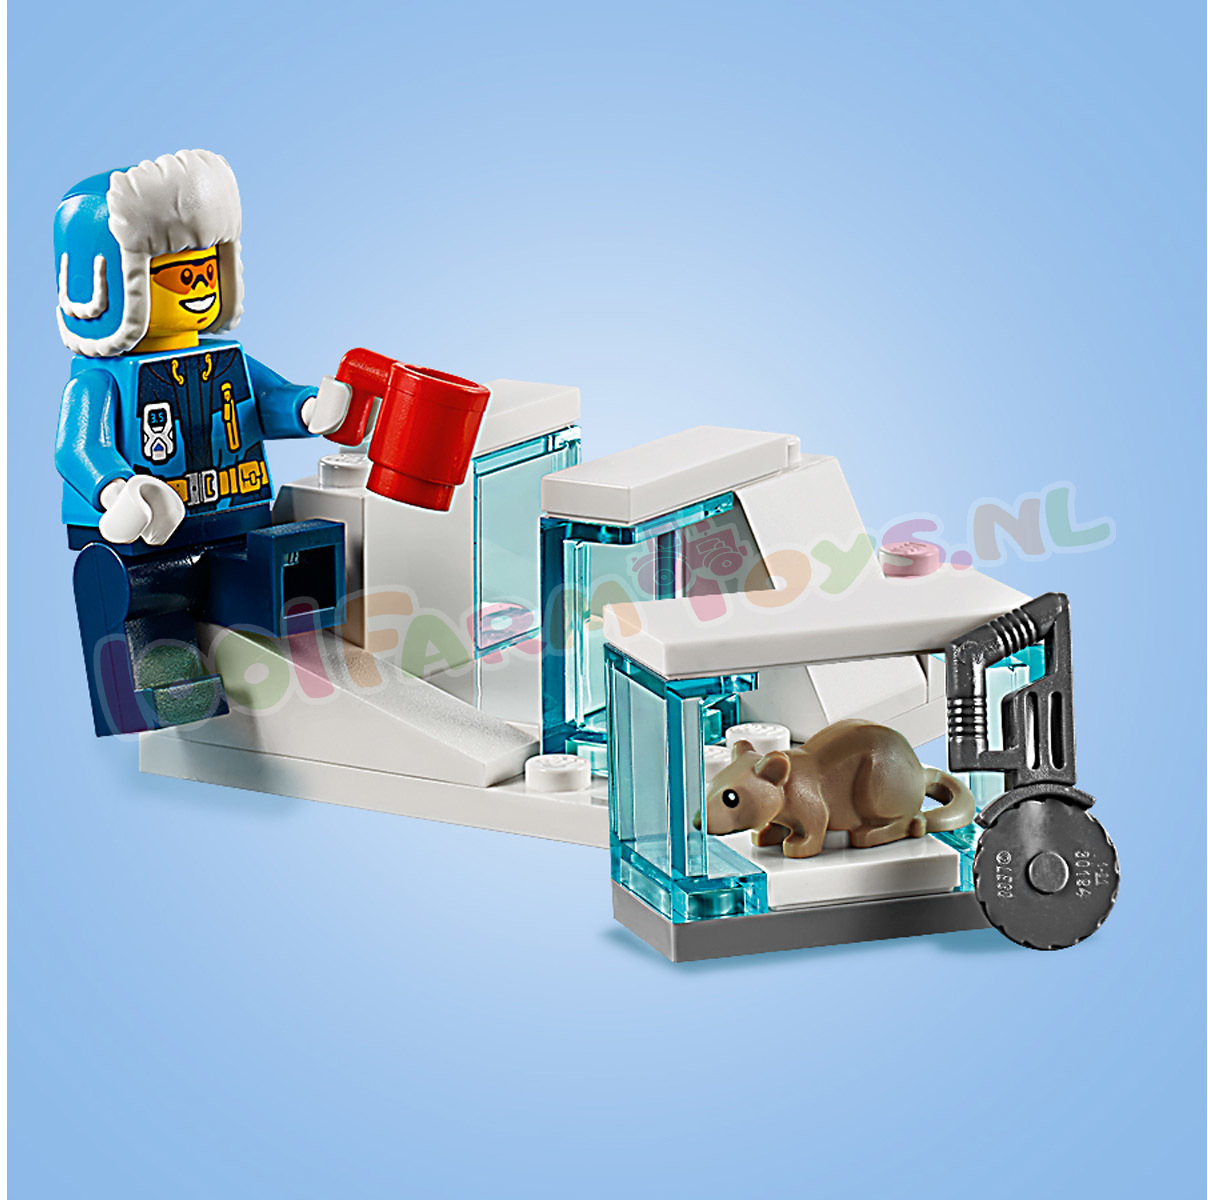 Terminal Ontdekking Baron LEGO CITY POOLIJSCRAWLER - 60192 - Uitverkocht Farm - 1001Farmtoys  landbouwspeelgoed - Let op dit product wordt niet meer geproduceerd door  LEGO OP OP